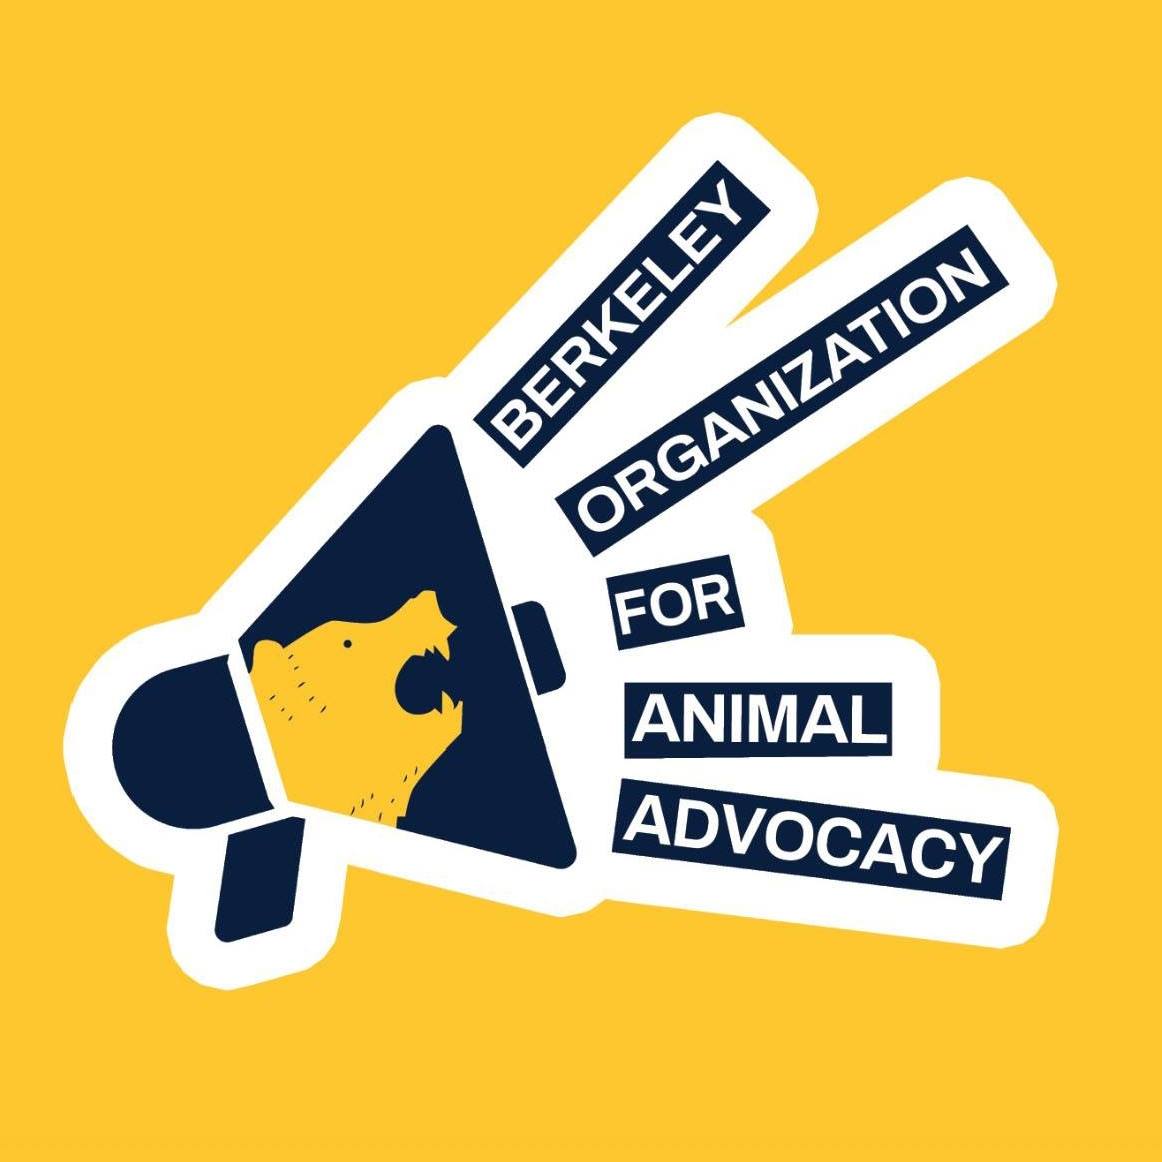 Berkeley Organization for Animal Advocacy logo.